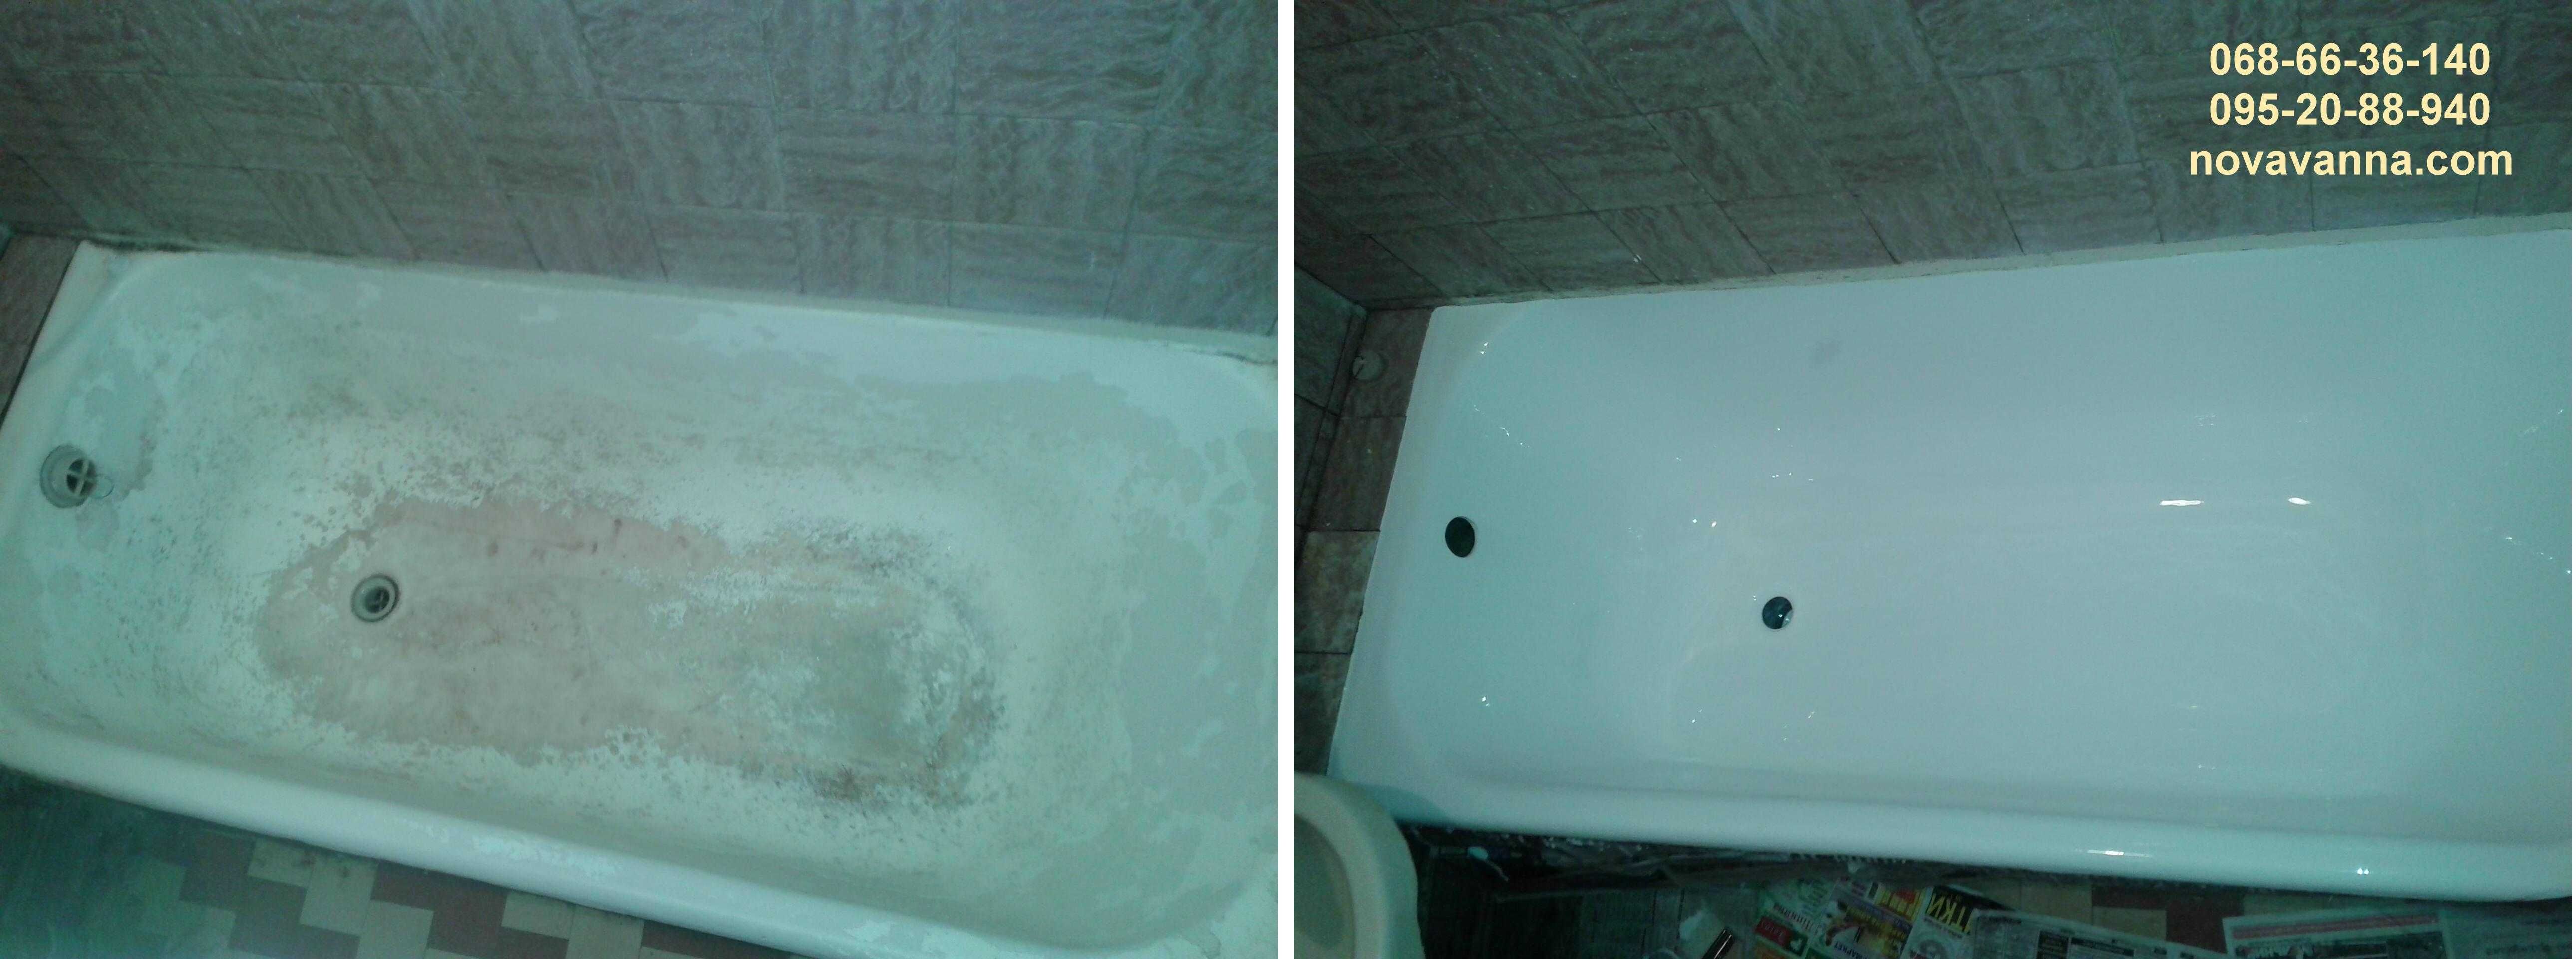 Реставрация ванн КАМЕНСКОЕ. Реставрация ванн с Гарантией. Качественно